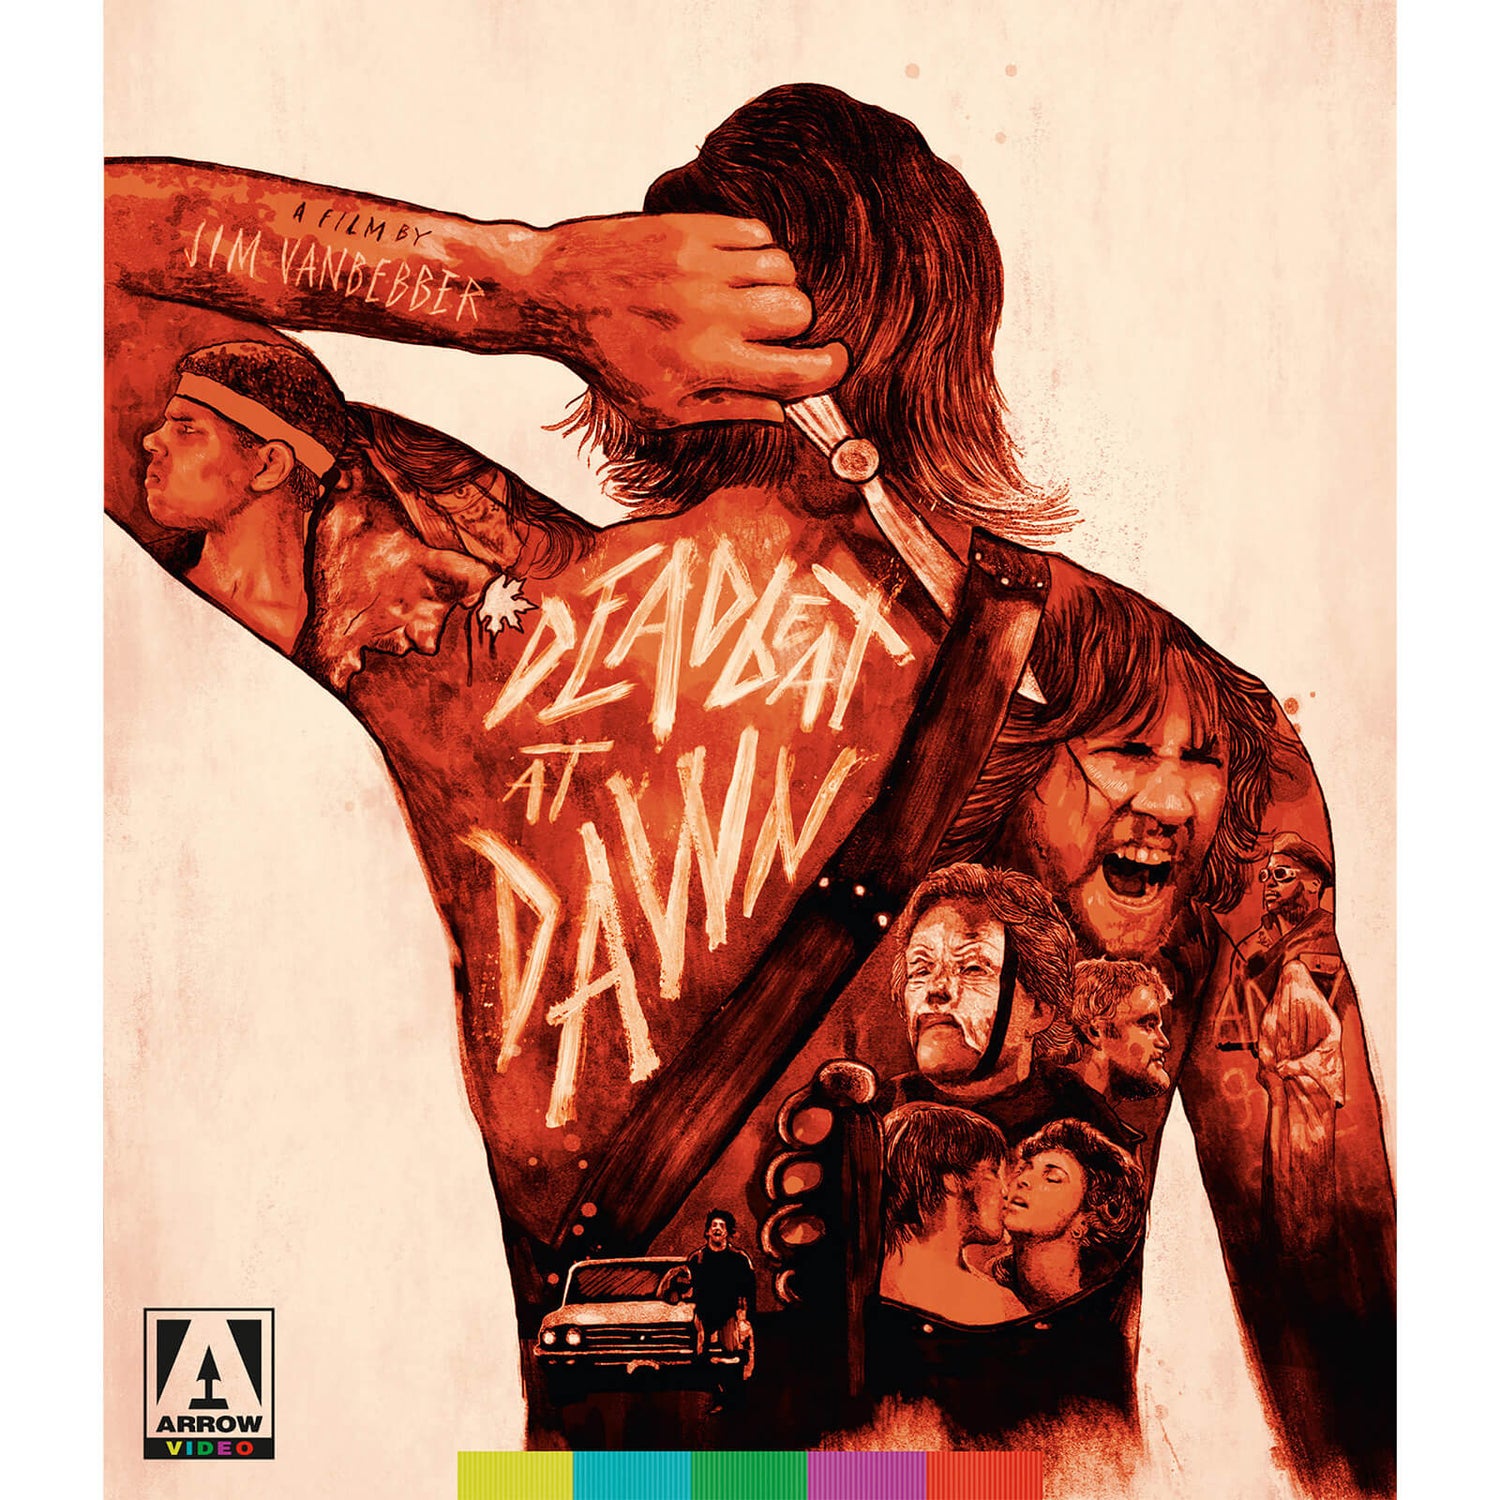 Deadbeat At Dawn Blu-ray